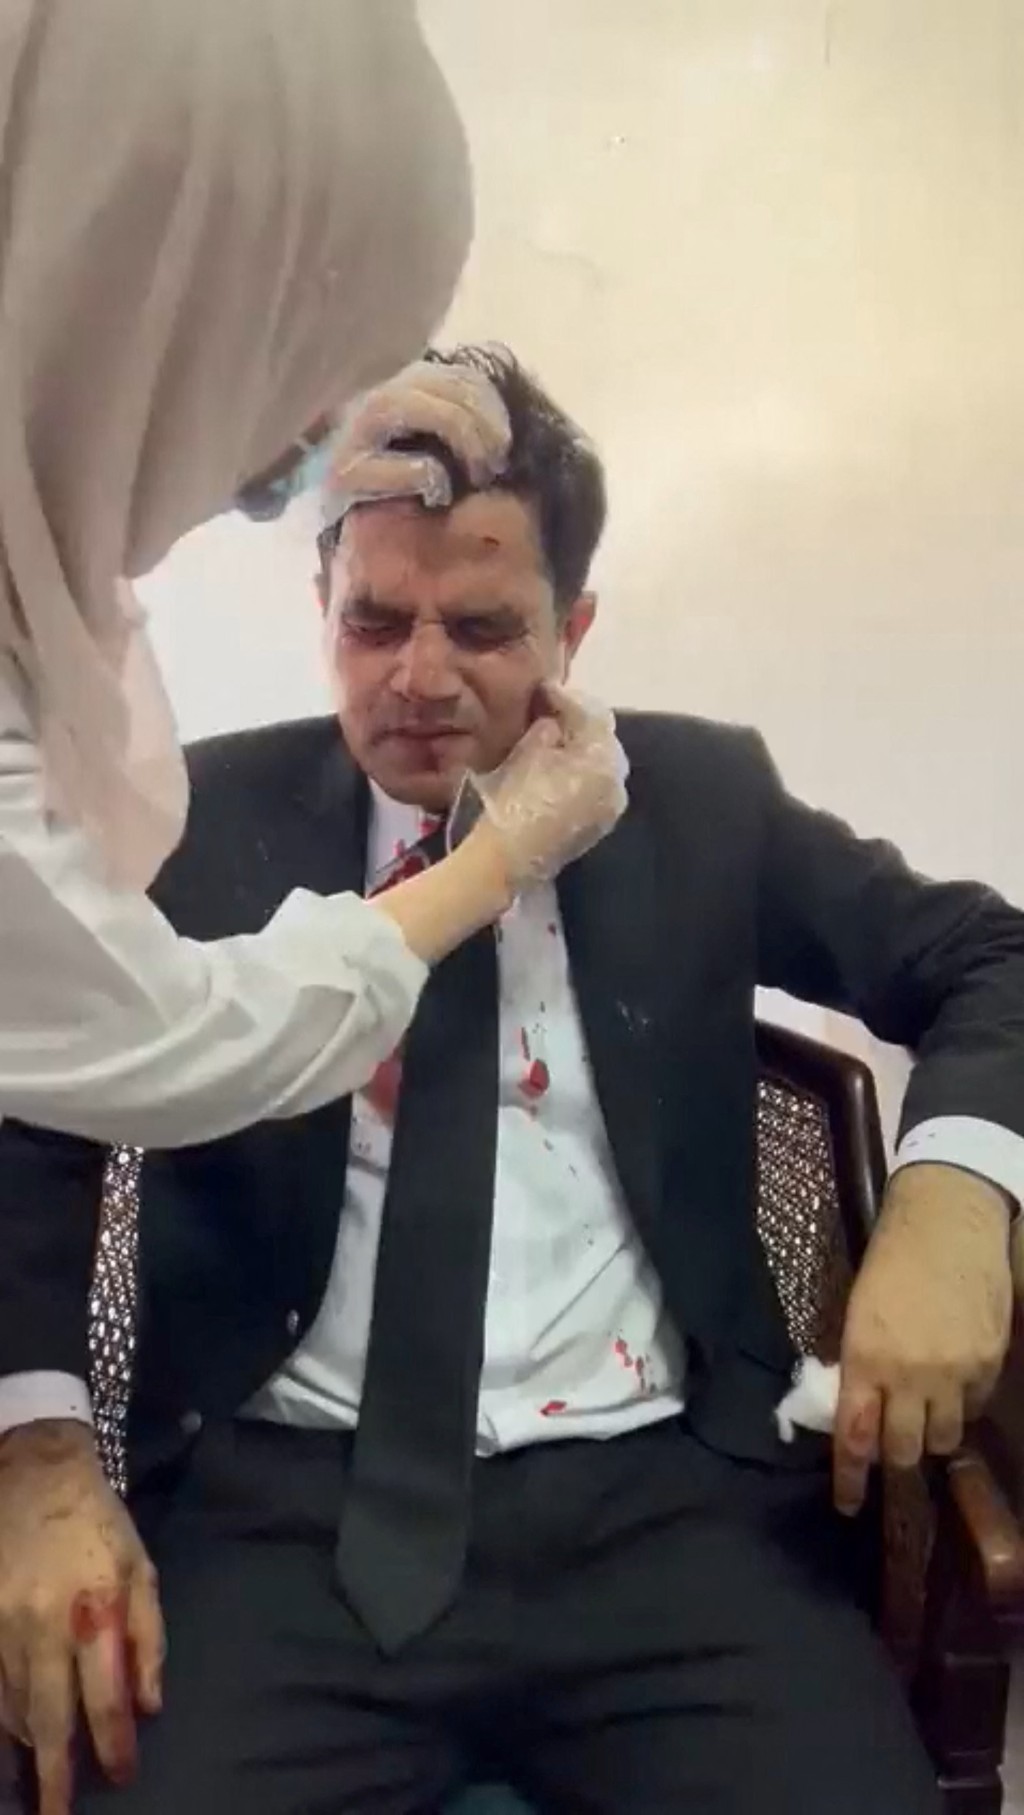 伊姆兰汗的代表律师被打伤。 路透社